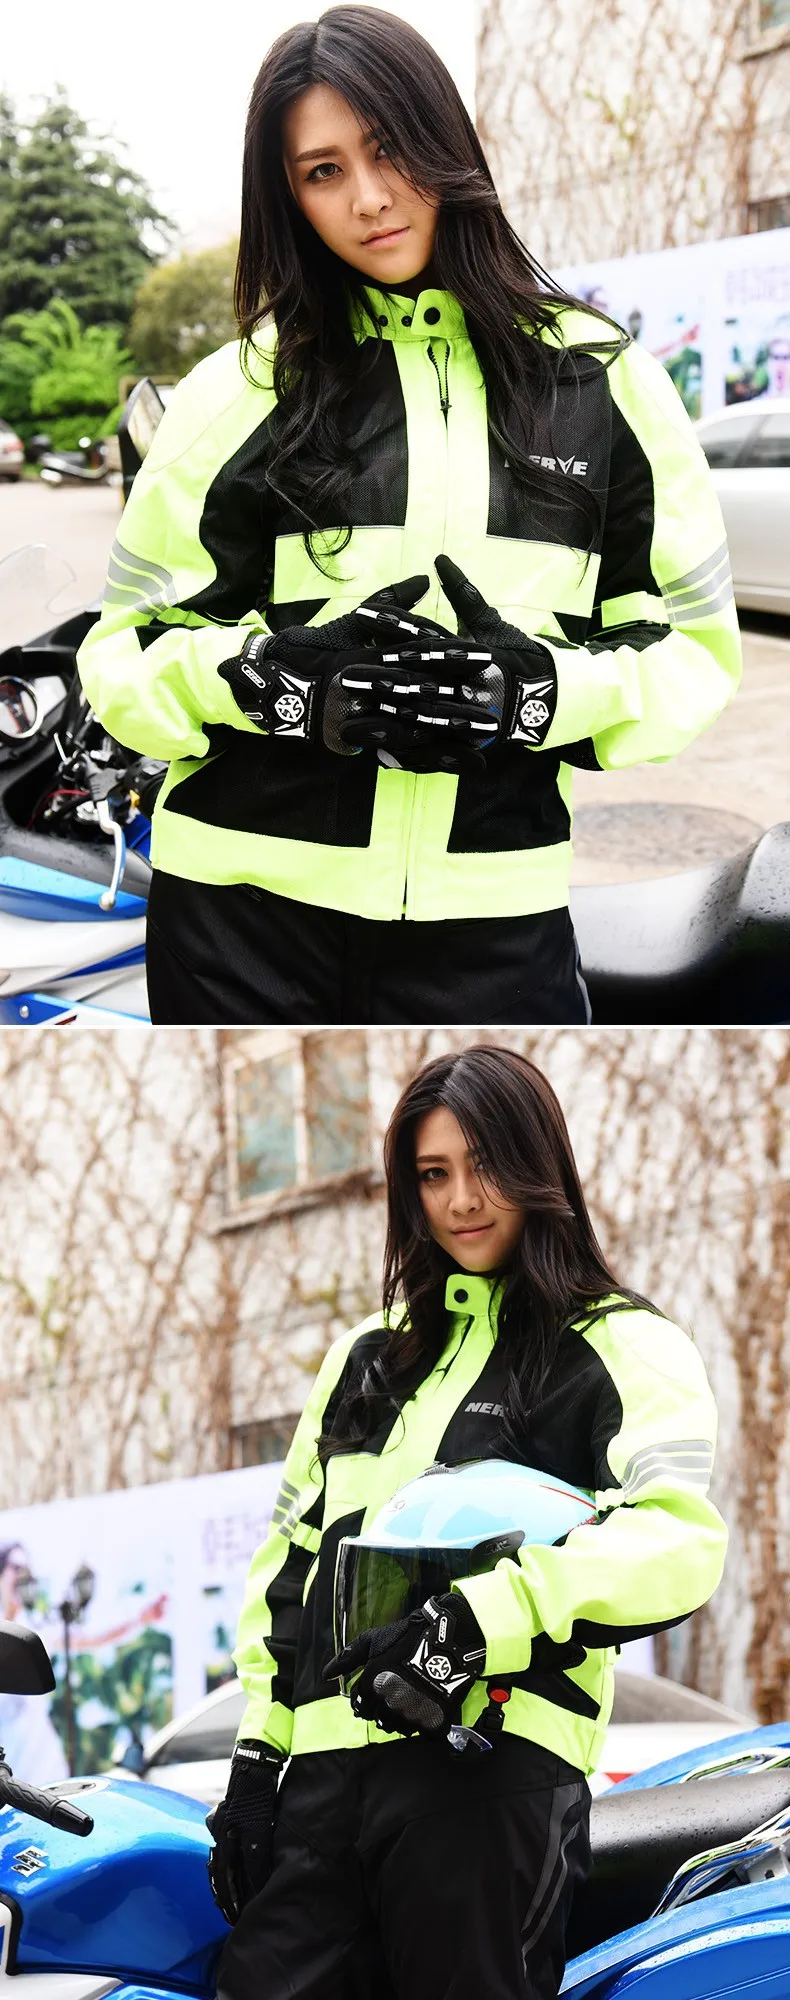 Scoyco MC20 Мотоциклетные Перчатки из углеволокна мотоциклетные перчатки с жесткими защитными вставками, размеры мотор Сенсорный экран Гоночные перчатки